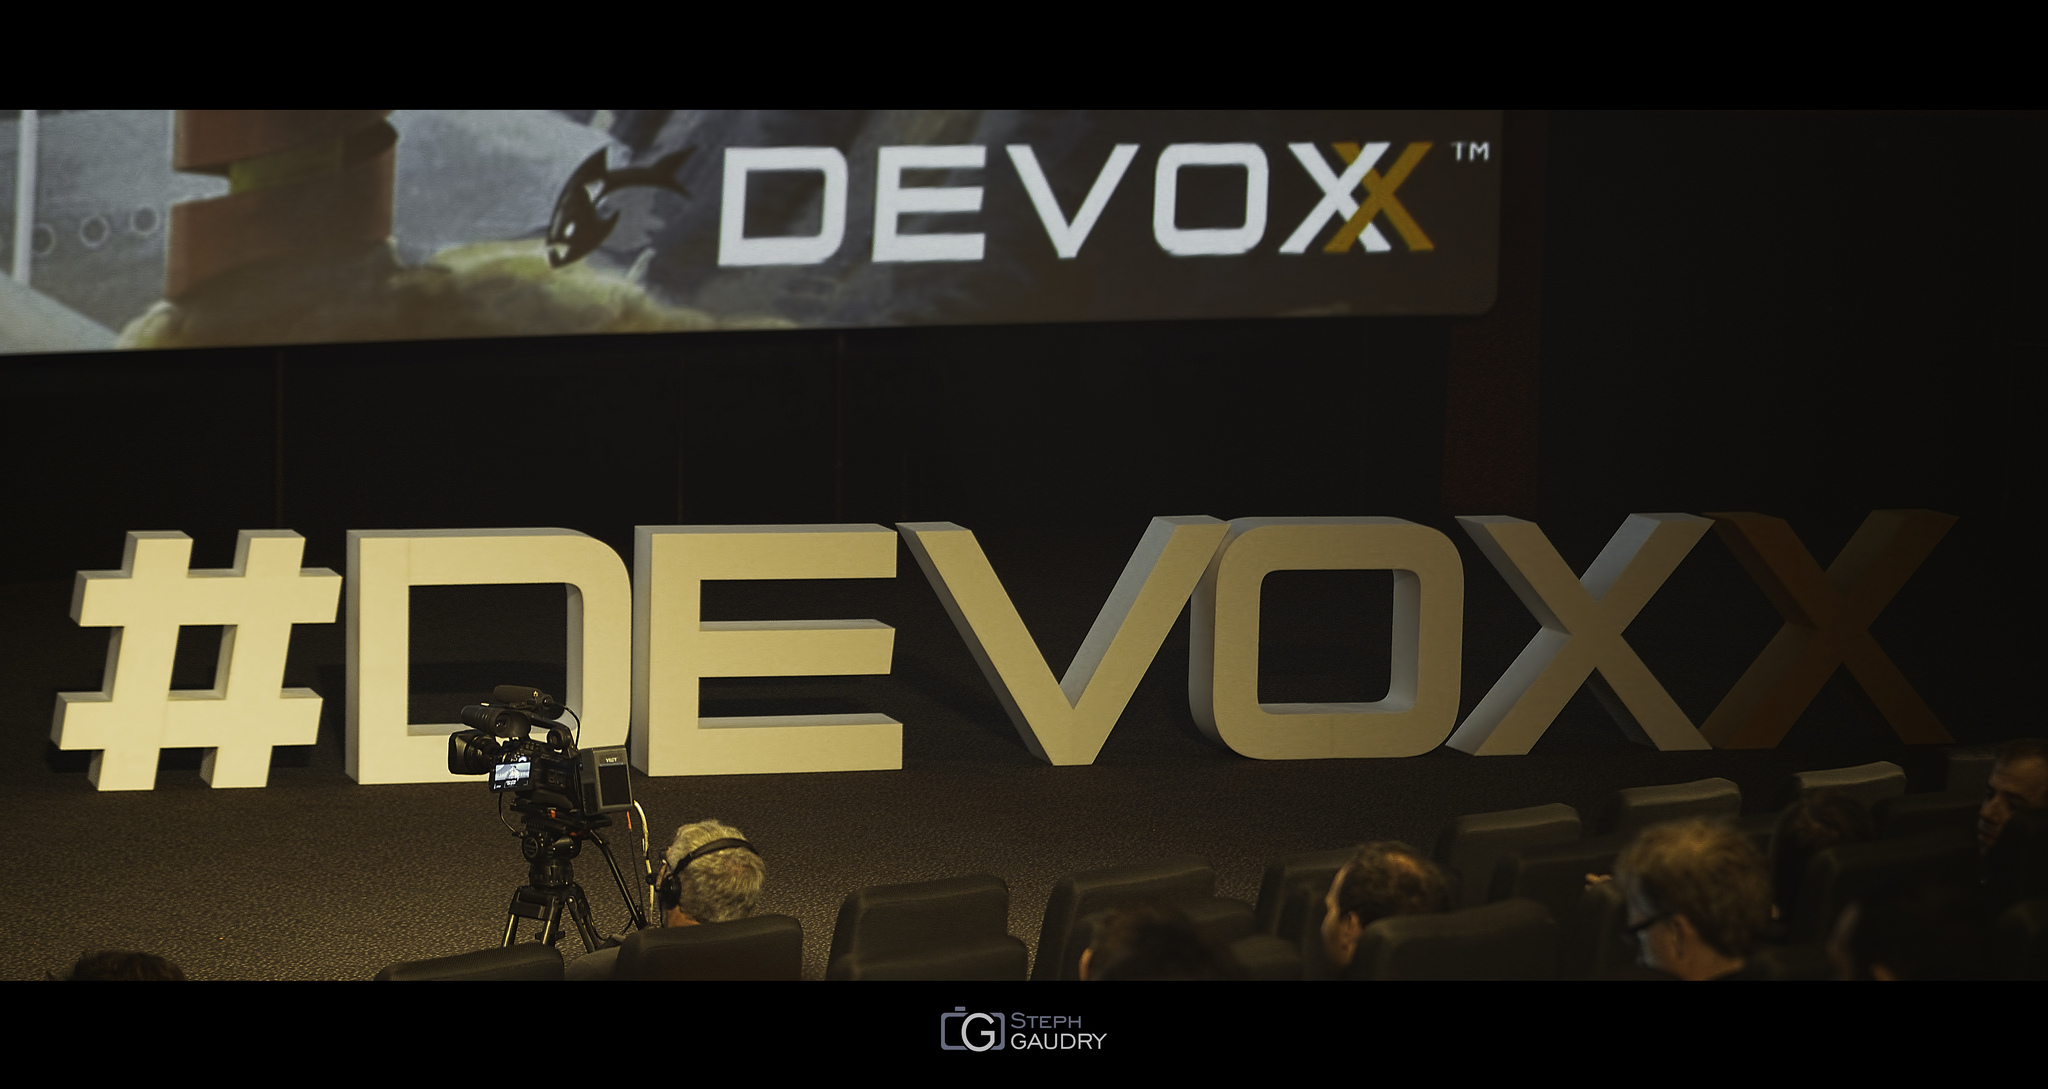 Devoxx 2015 [Klicken Sie hier, um die Diashow zu starten]